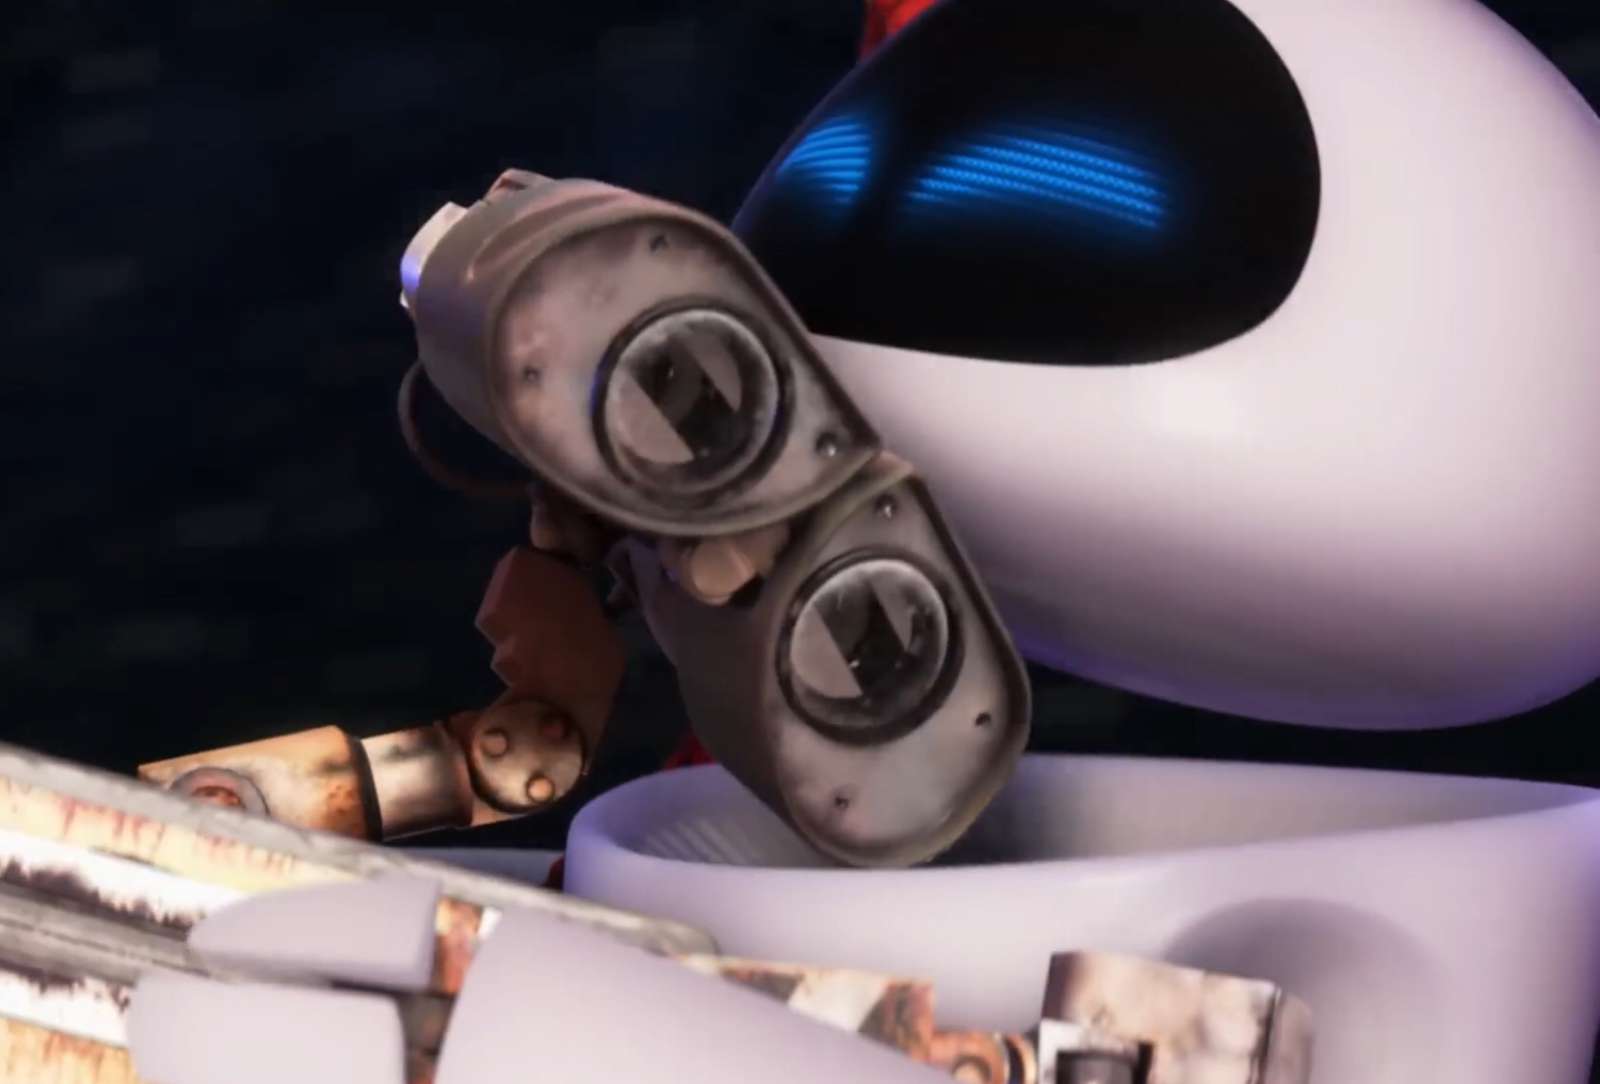 WALL-E X Eve❤️❤️❤️❤️❤️❤️❤️ puzzle online